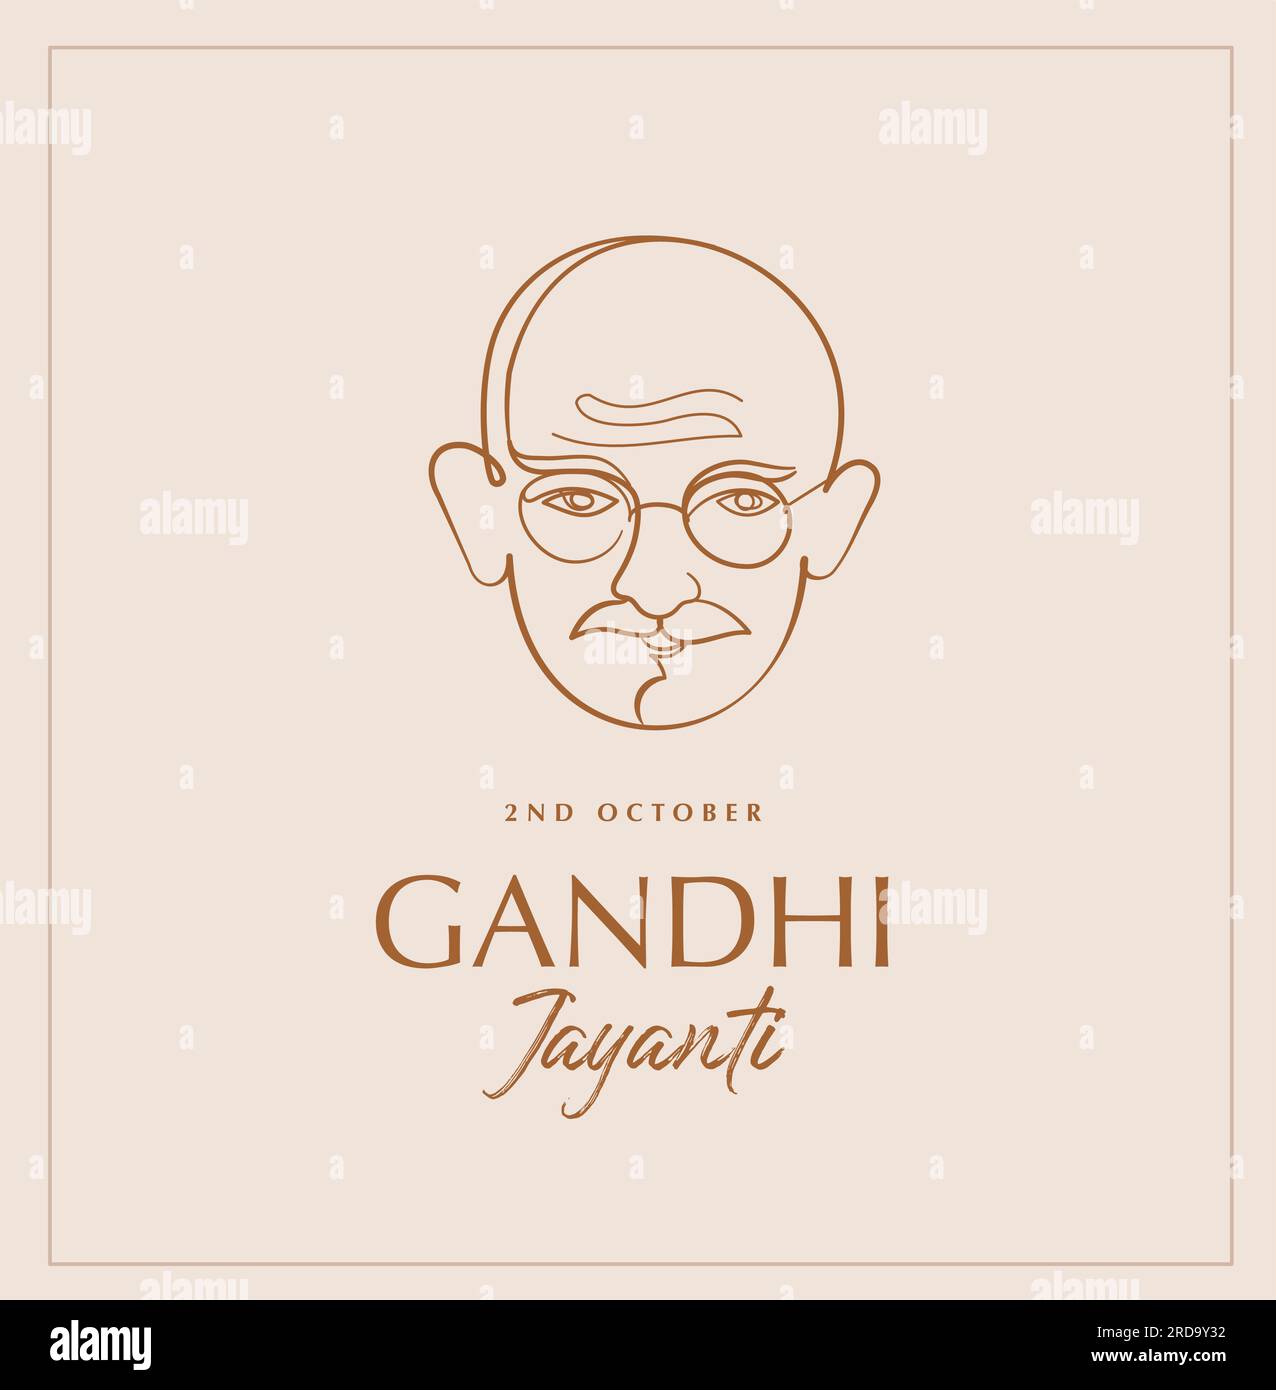 Gandhi Jayanti, handgezeichnet, linearer Hintergrund. Mahatma Gandhi-Vektorgrafiken-Illustration. Stock Vektor